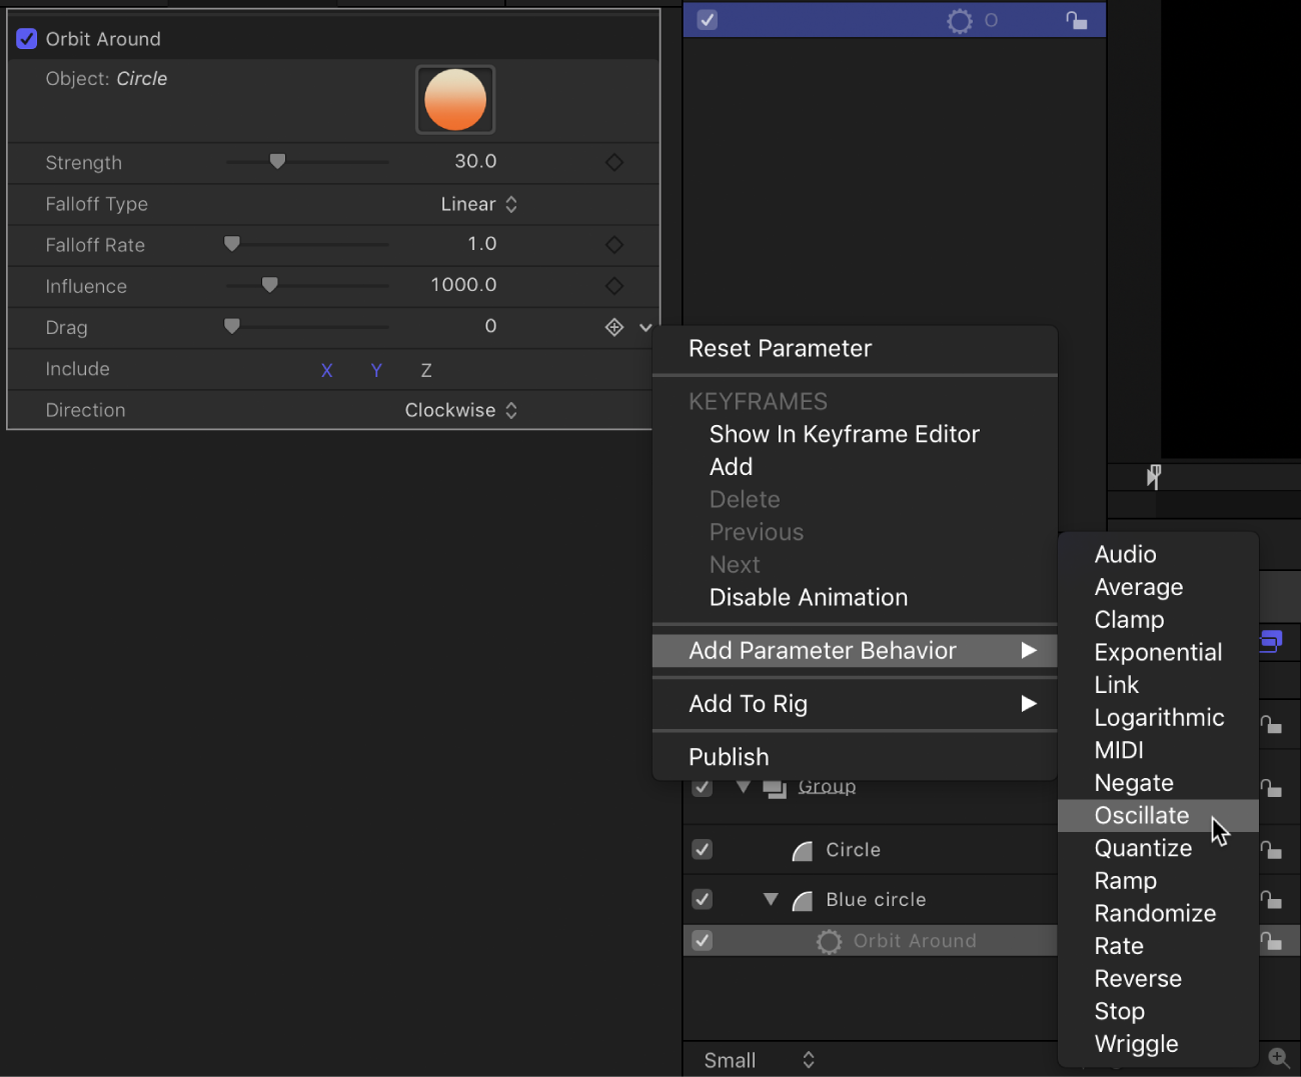 Add Parameter submenu in the Animation menu